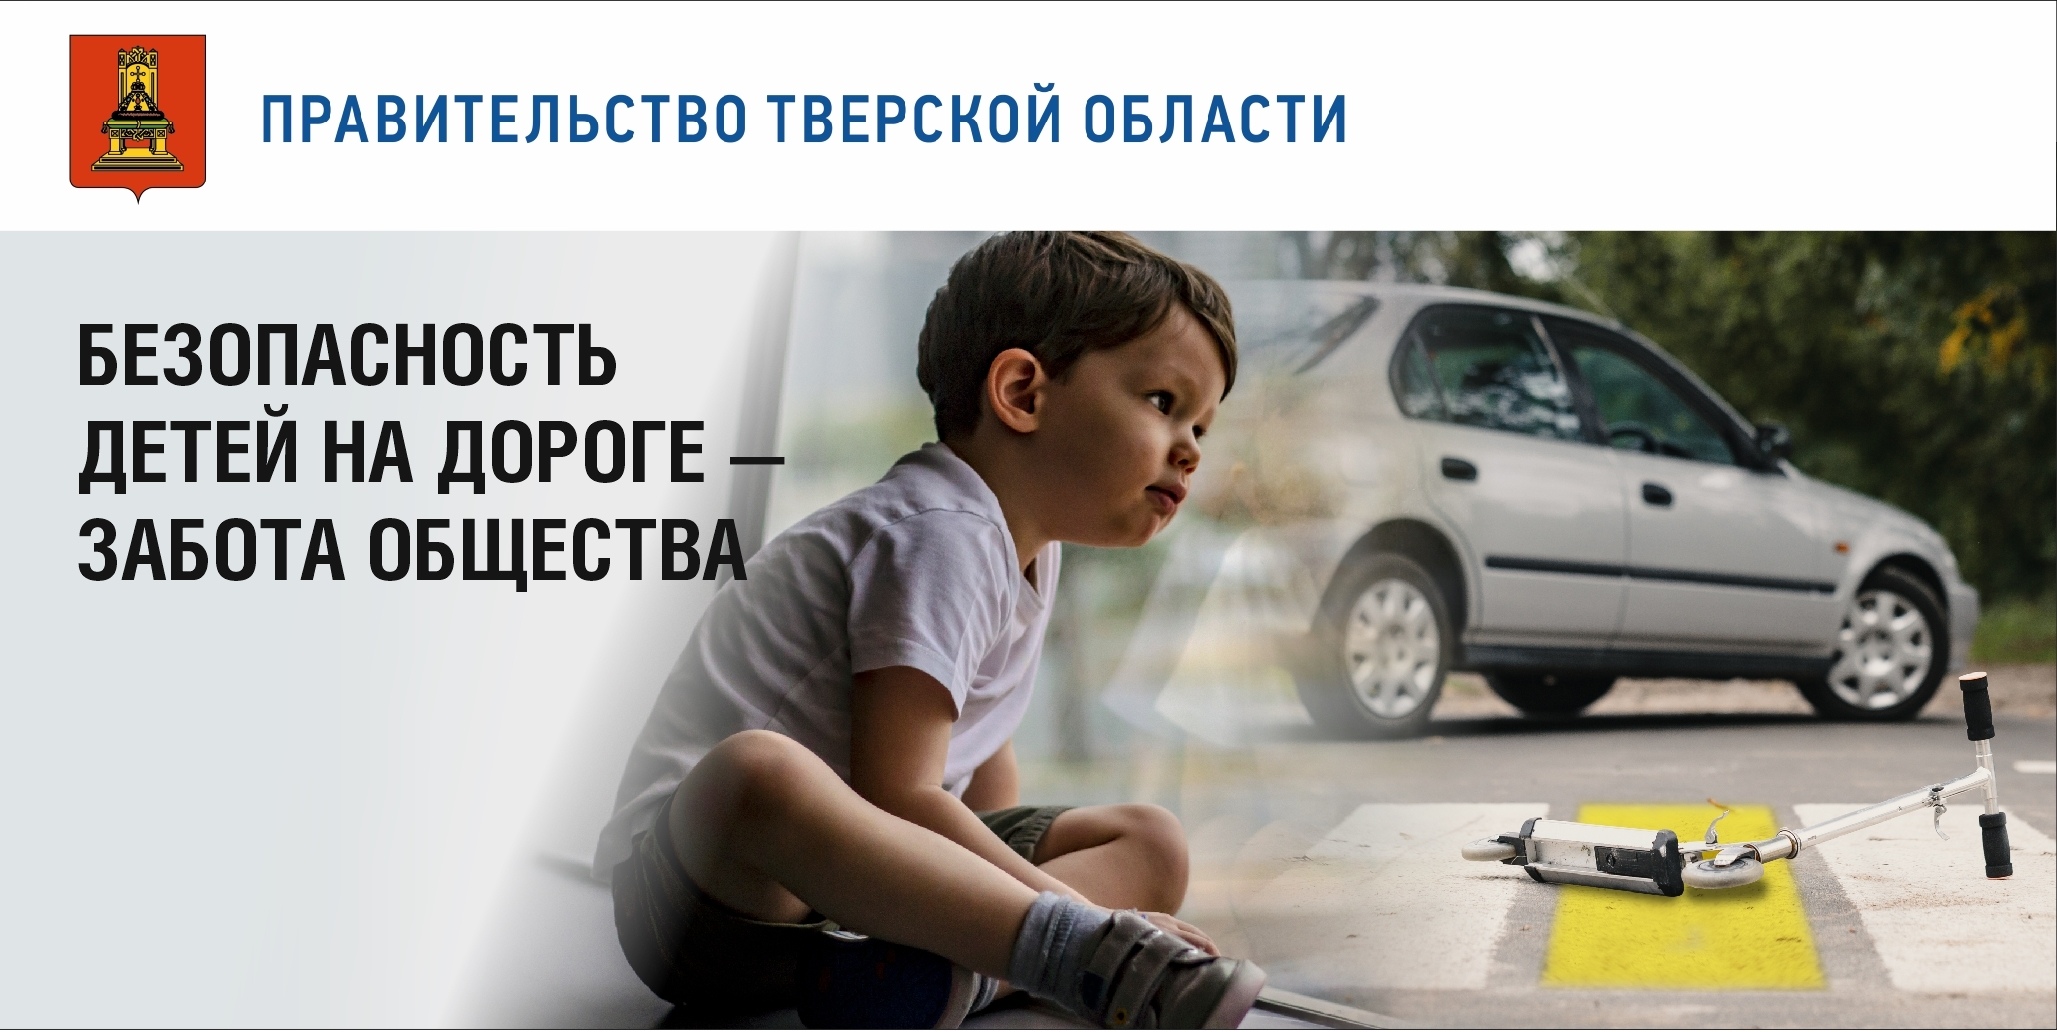 Проблема дети на дороге. Позаботьтесь о безопасности детей на дороге. Соц реклама дети на дороге. Вниманию родителей безопасность детей на дорогах. Безопасность детей на дороге забота общества.